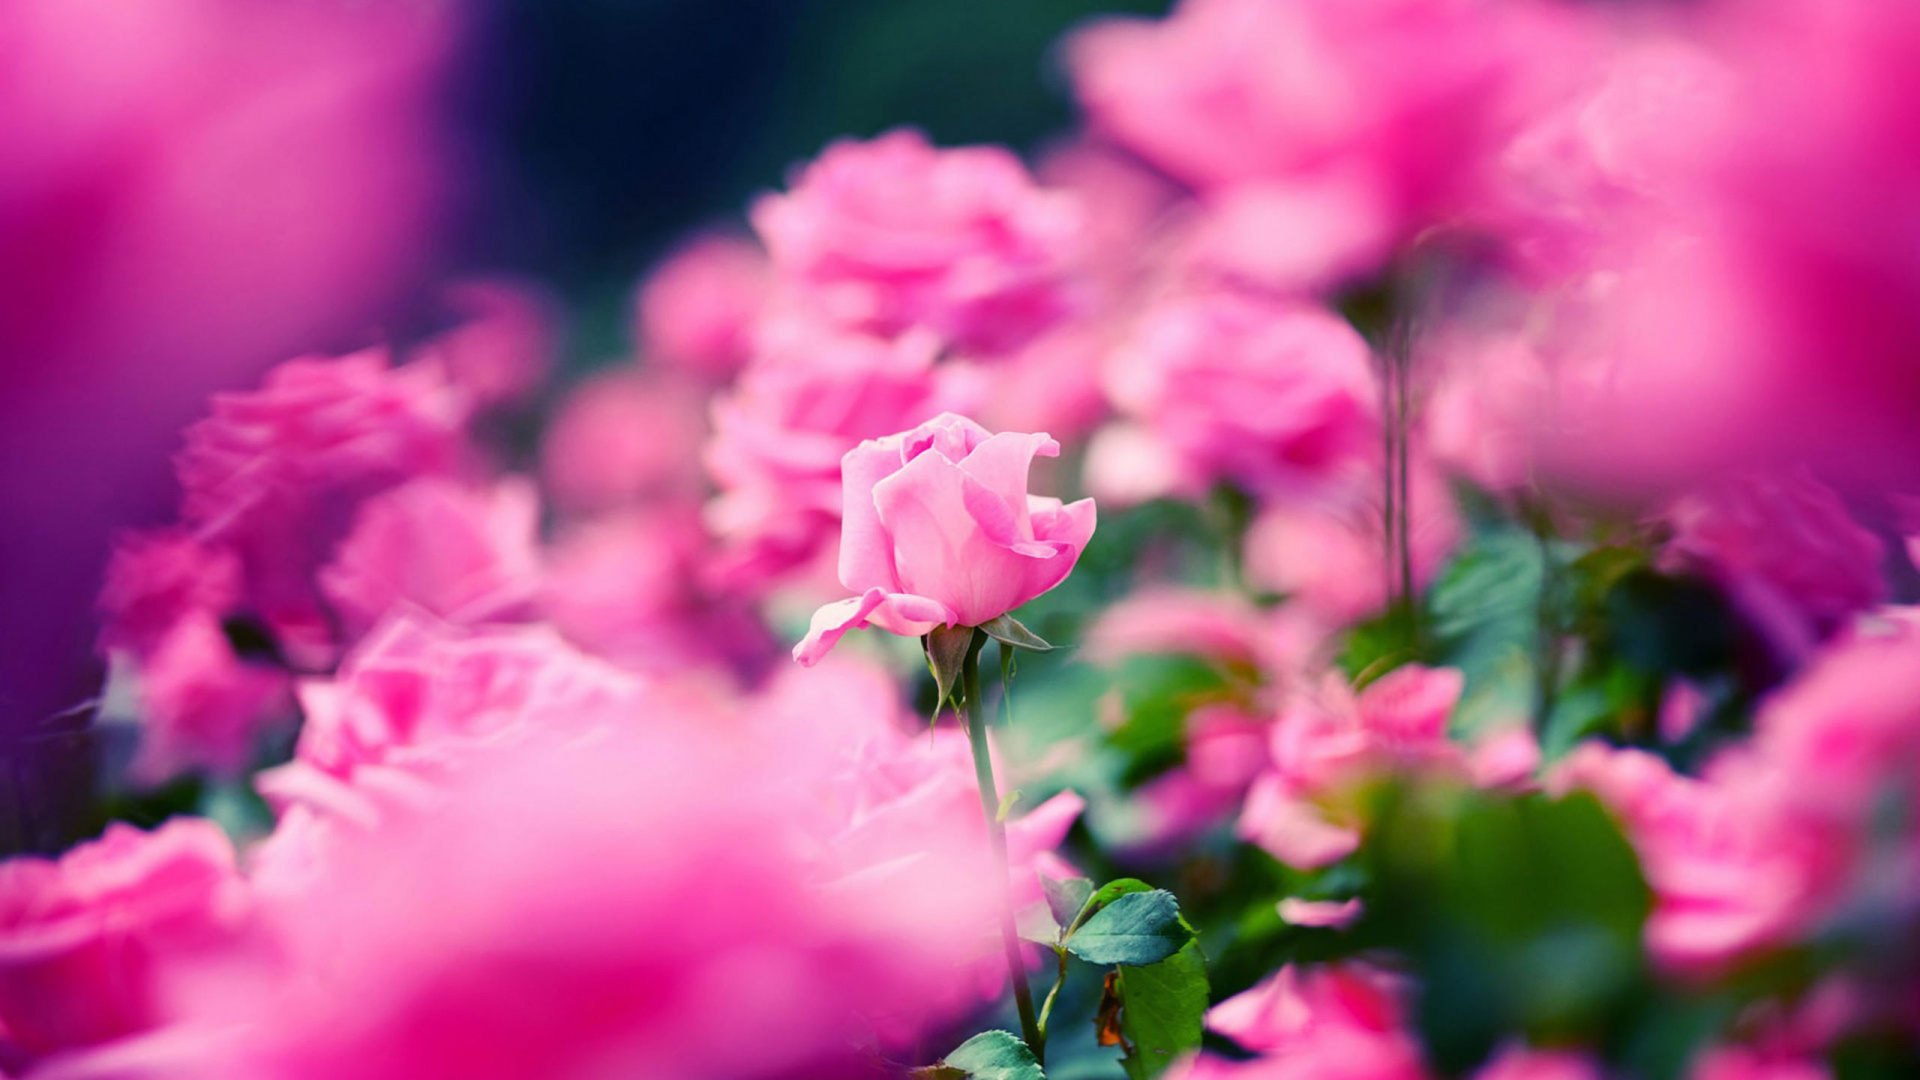 显花植物, 粉红色, 玫瑰花园, 品红色, 弹簧 壁纸 1920x1080 允许